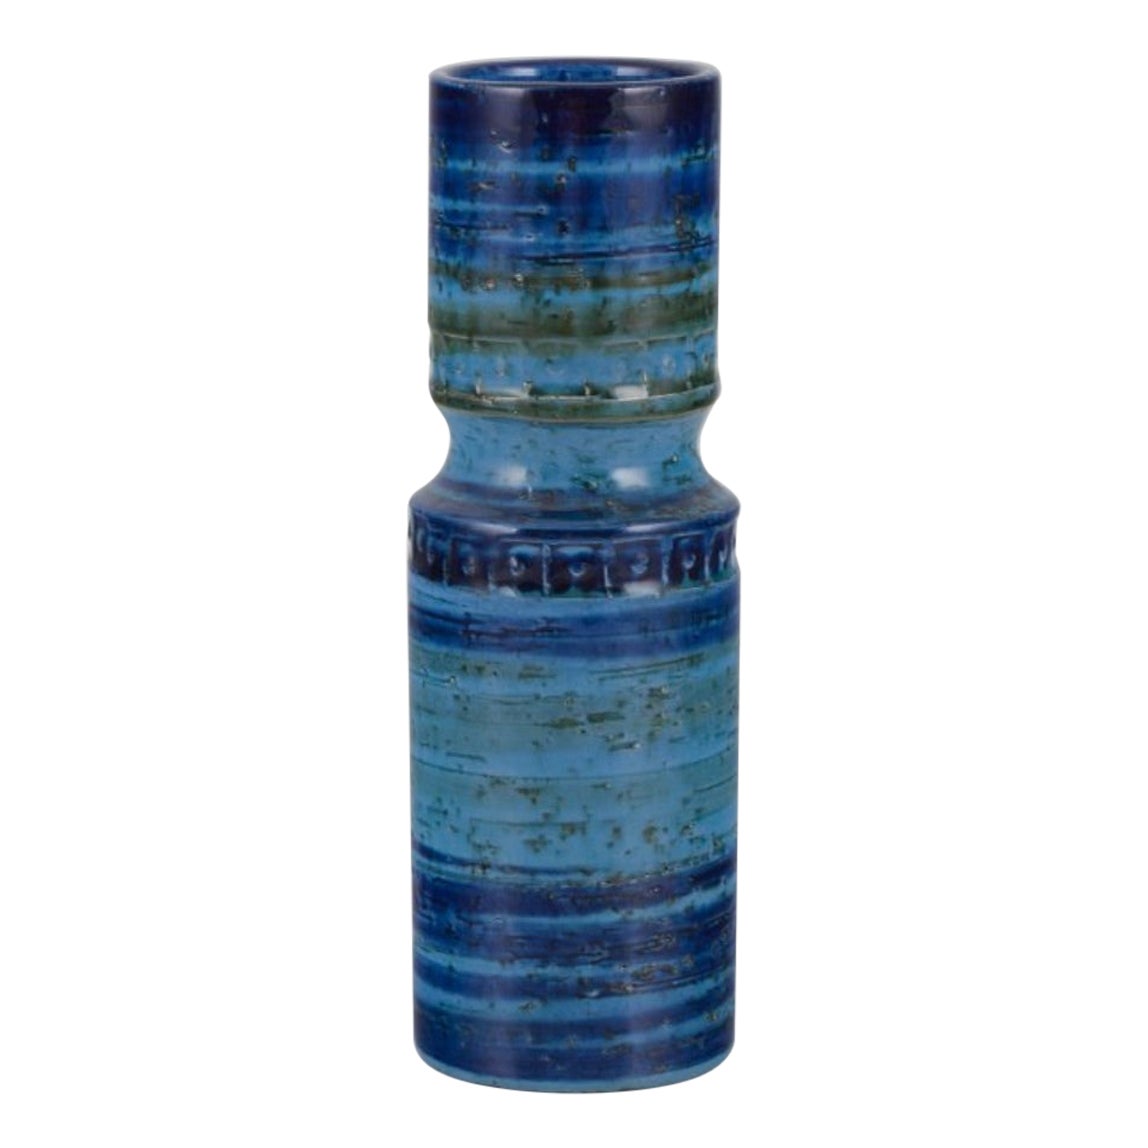 Aldo Londi pour Bitossi, Italie. Vase en céramique à glaçure verte et bleue.